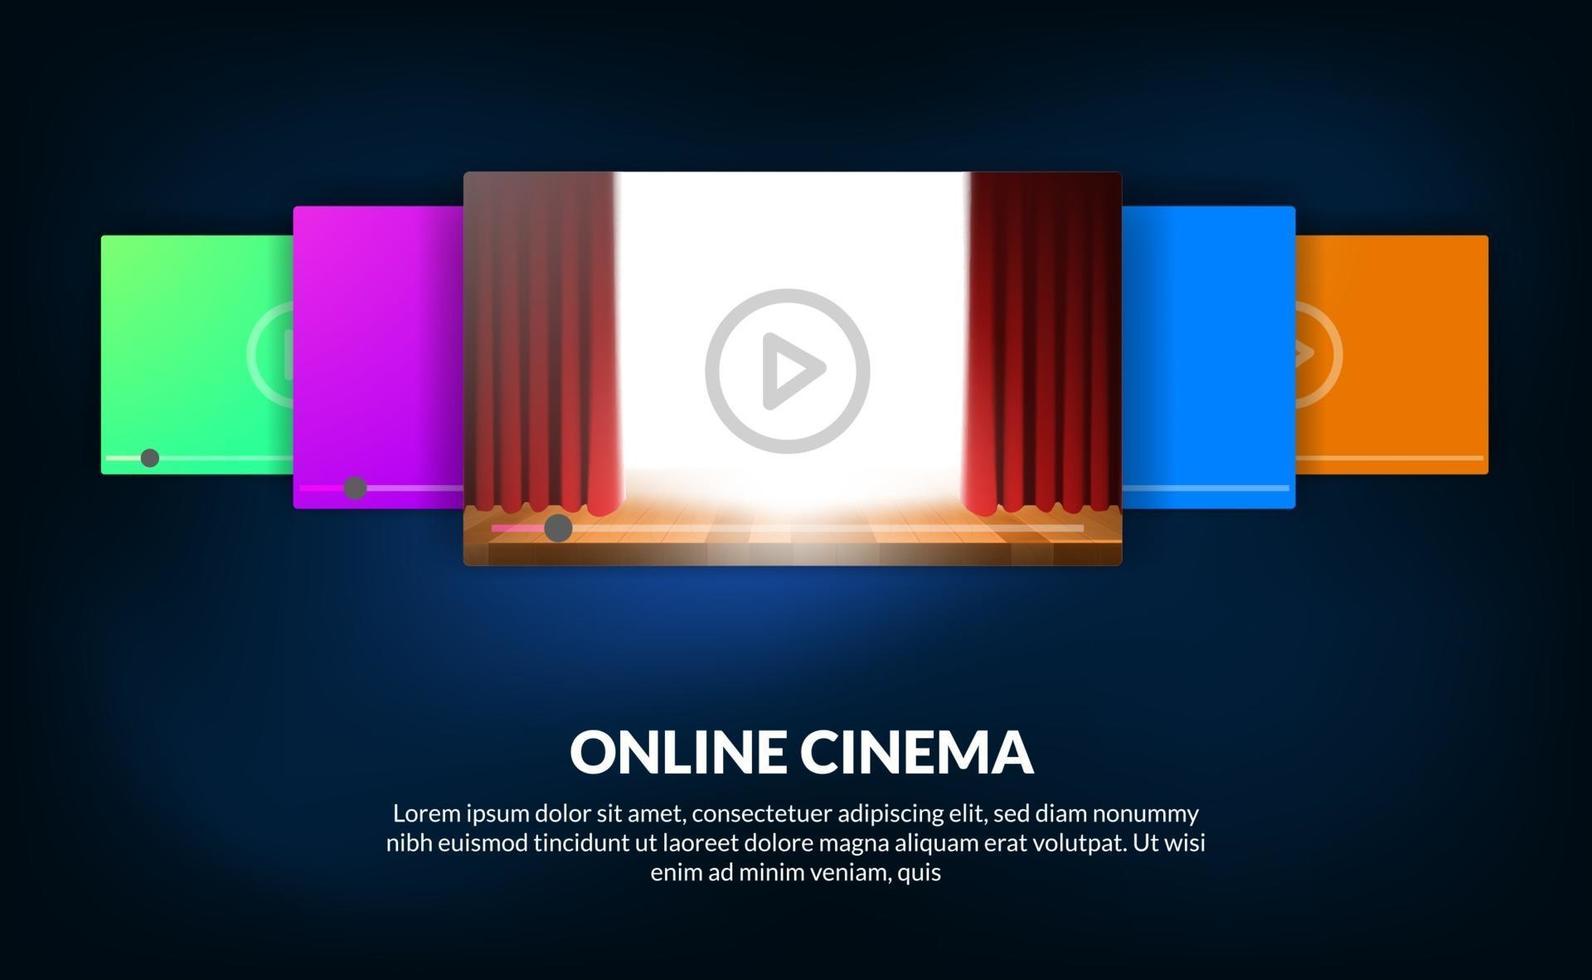 carrossel de filmes para o conceito de streaming de vídeo e cinema online com show de cortina vermelha para visualização do filme vetor